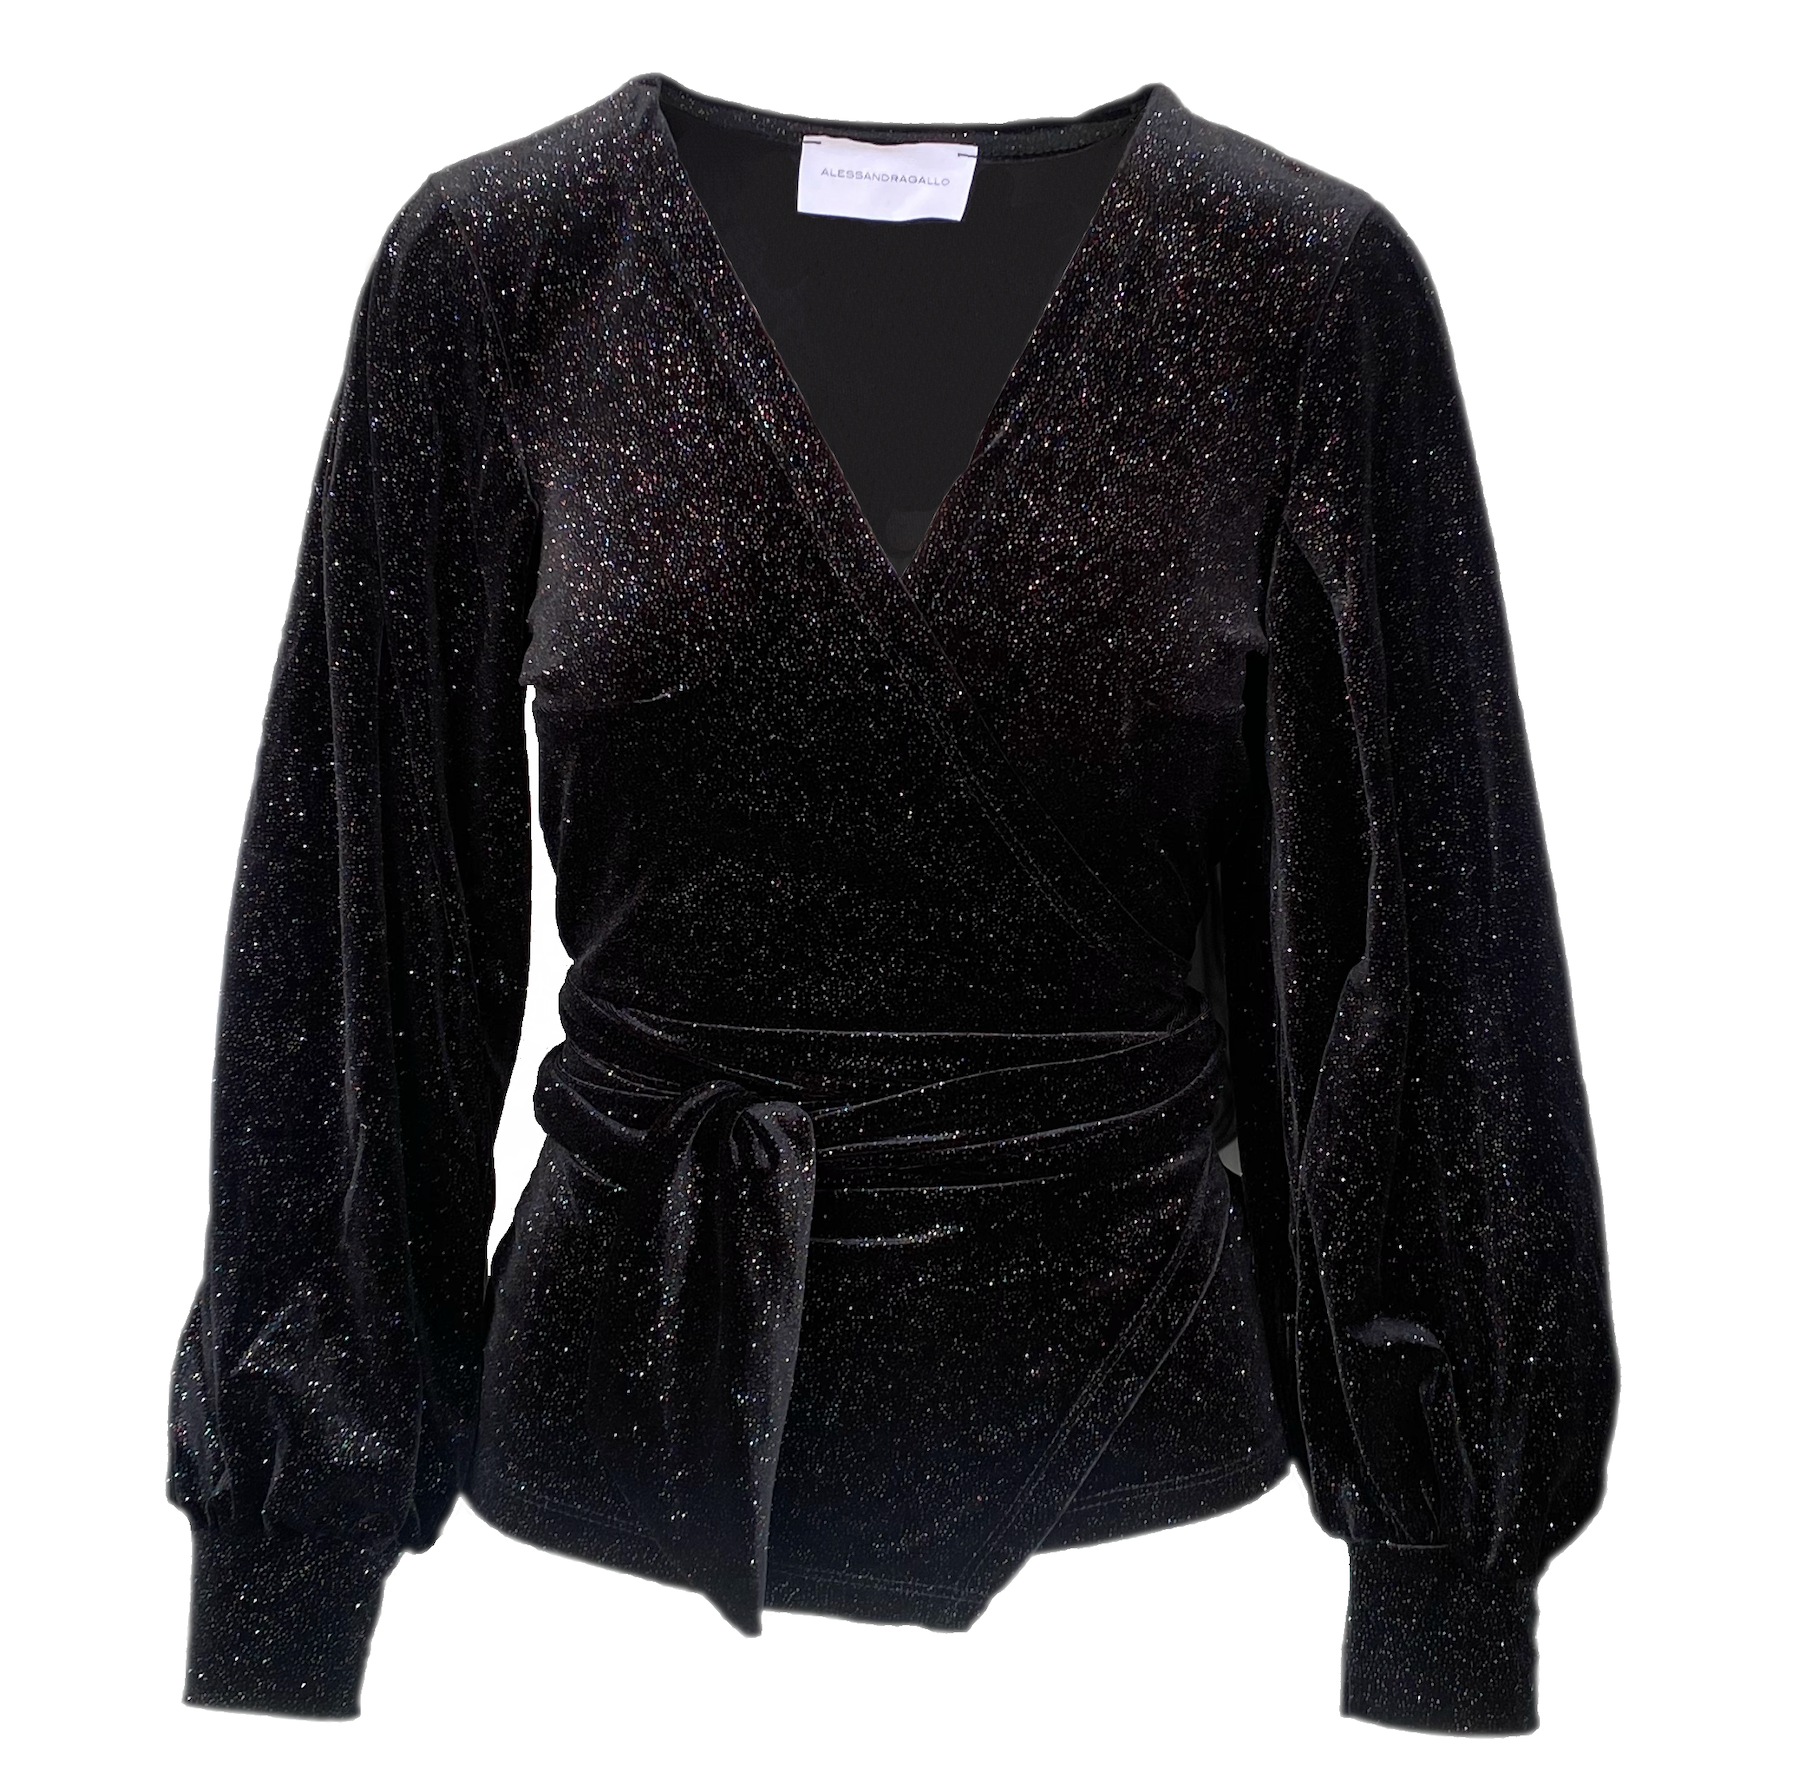 CLOE - kimono blouse in black sparkling chenille